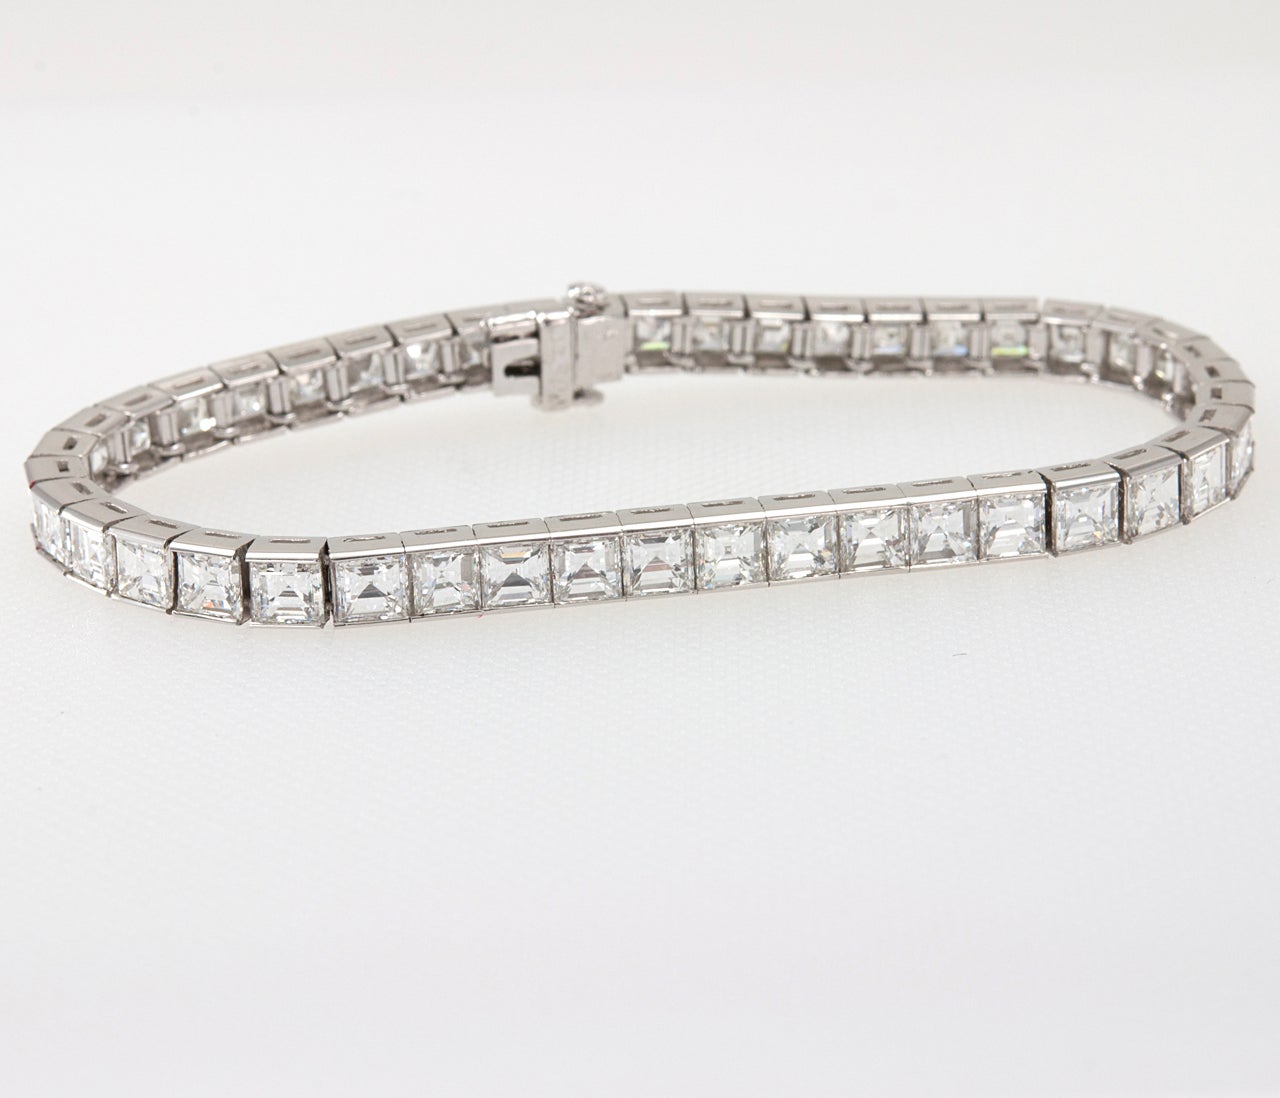 Beautiful square baguette diamond line bracelet. Set with approximately 16cts VS, G color diamonds. 7